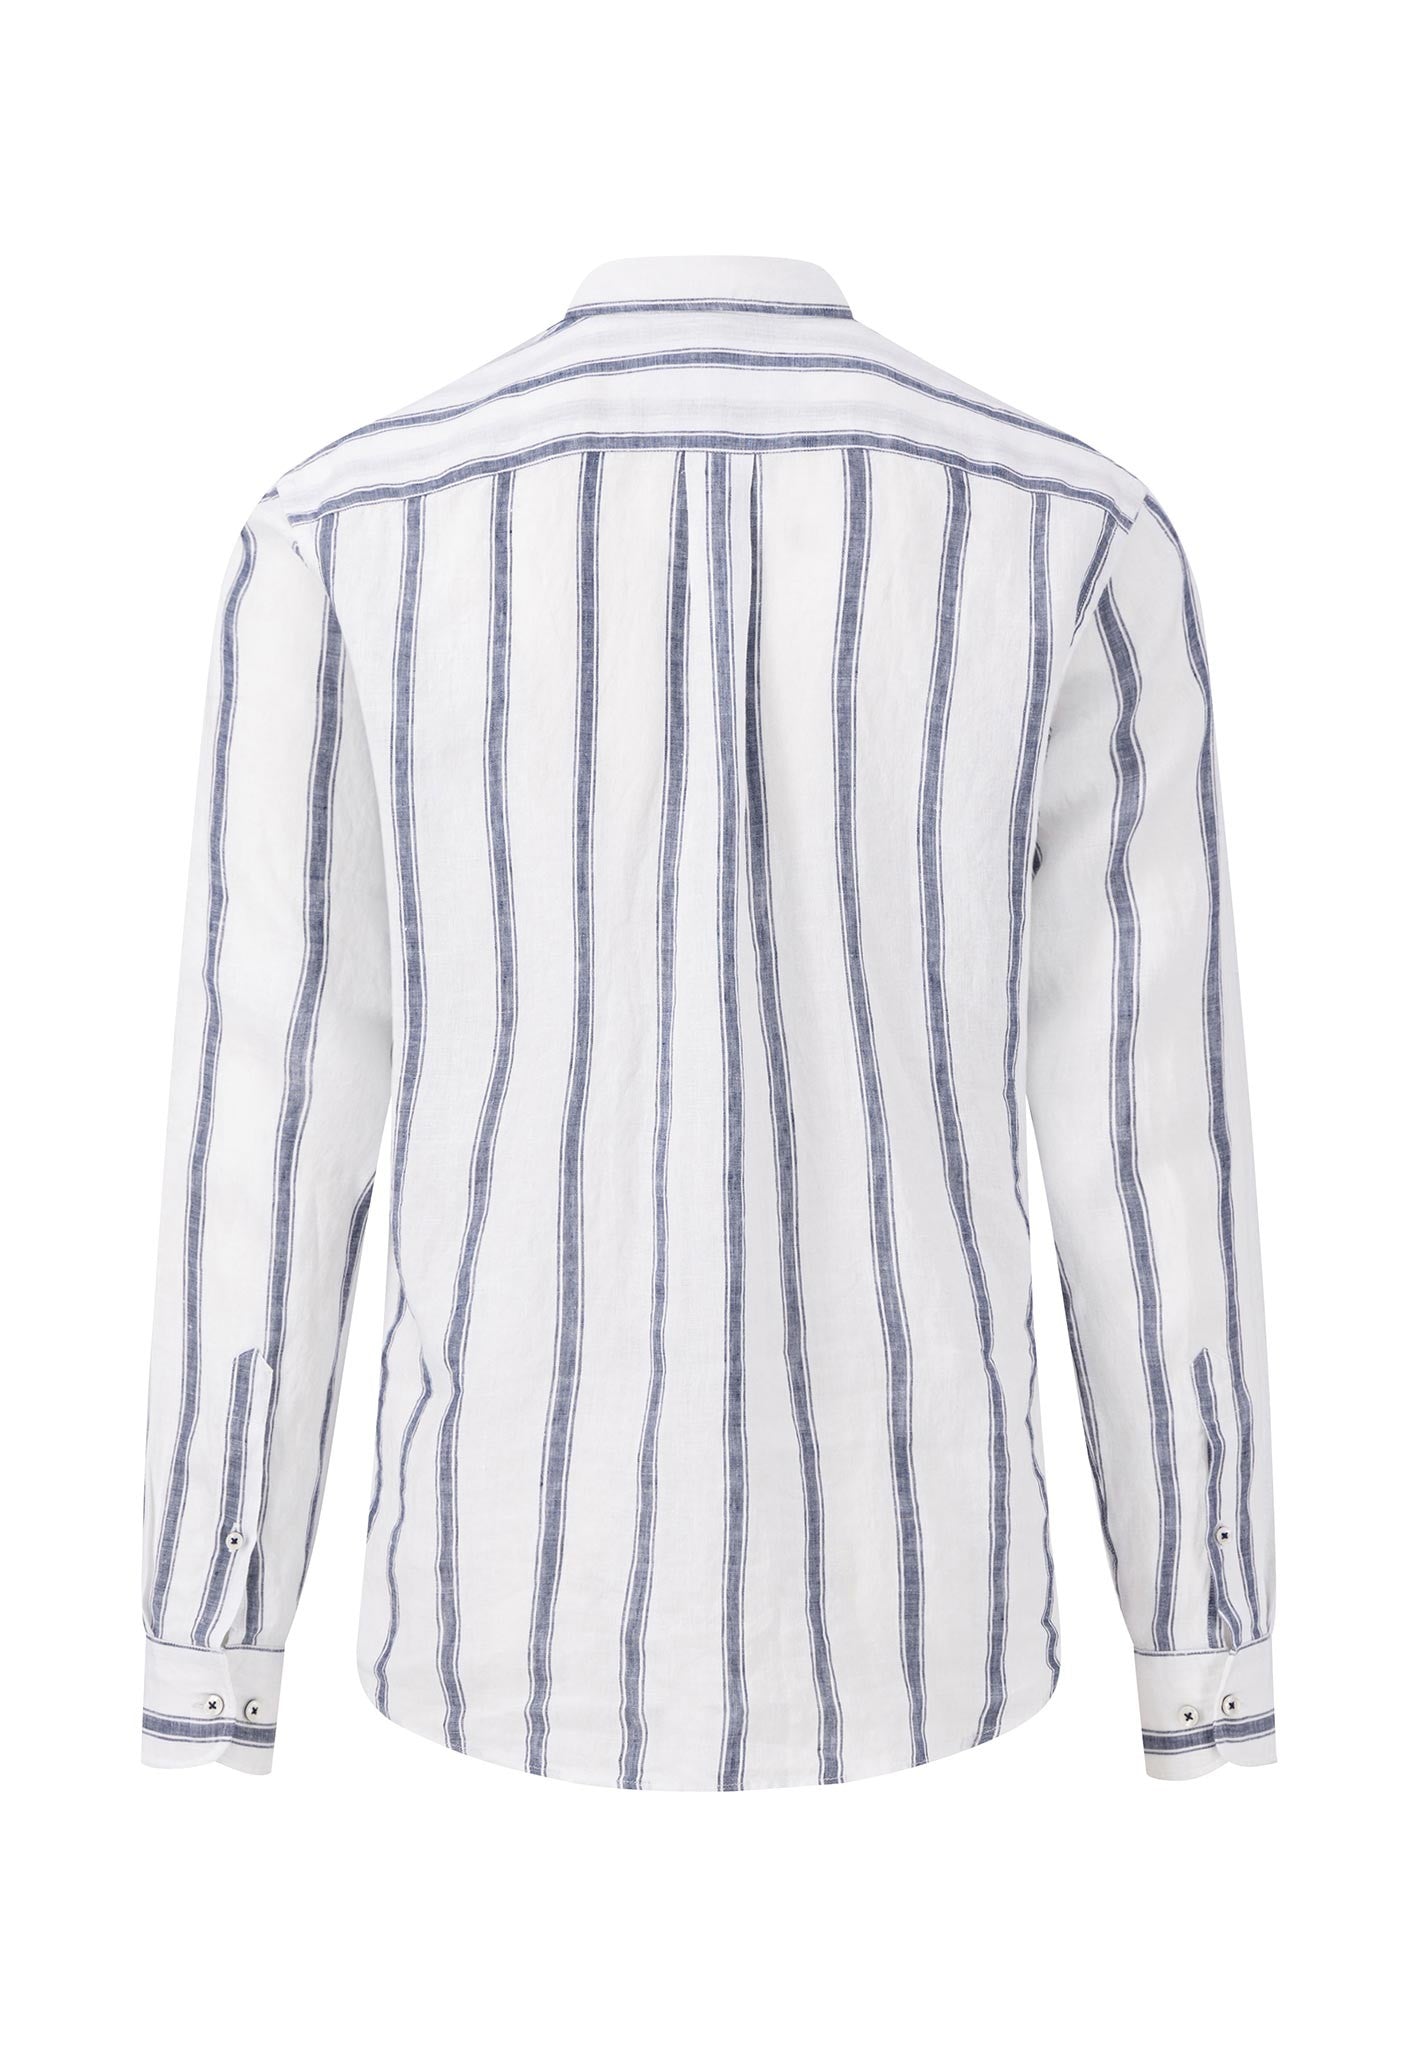 Fynch Hatton Pure Linen Shirt White Navy Stripe